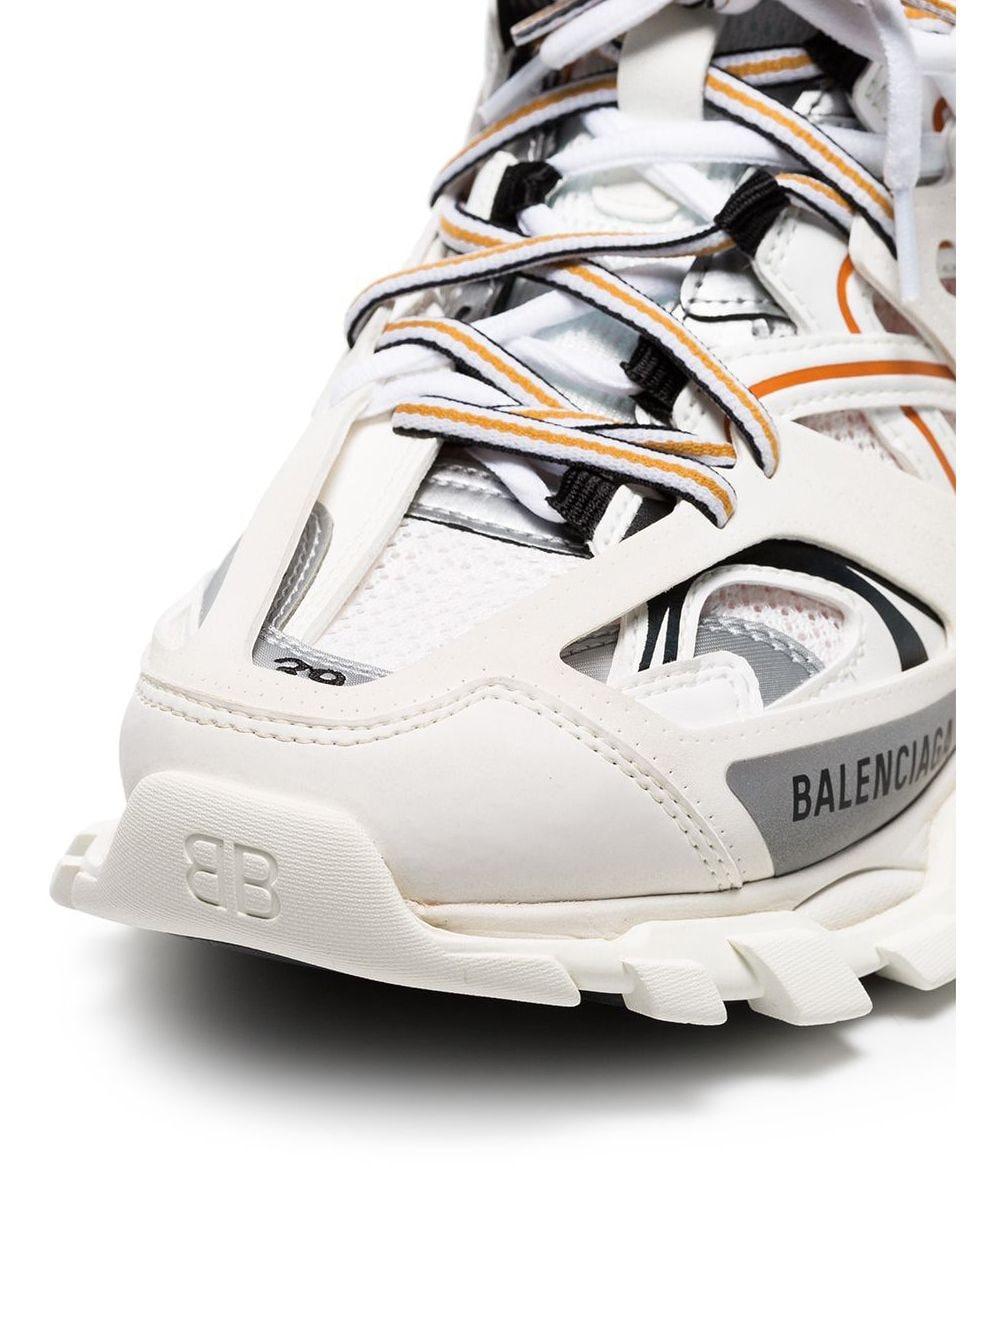 Balenciaga Rubber Track Sneaker in White / Orange (White) - Save 